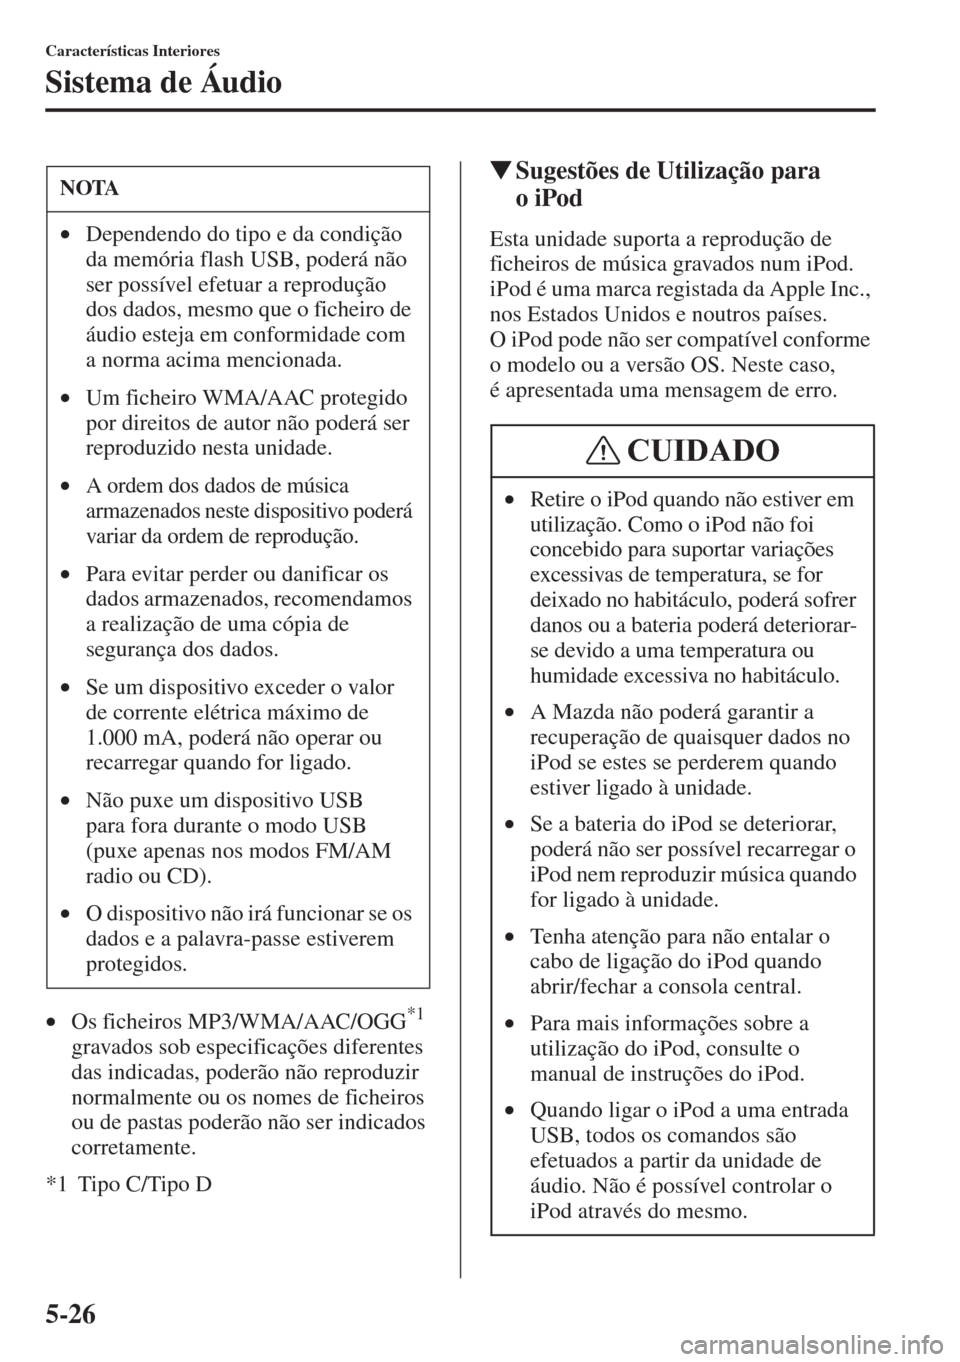 MAZDA MODEL CX-5 2015  Manual do proprietário (in Portuguese) 5-26
Características Interiores
Sistema de Áudio
•Os ficheiros MP3/WMA/AAC/OGG*1 
gravados sob especificações diferentes 
das indicadas, poderão não reproduzir 
normalmente ou os nomes de fich